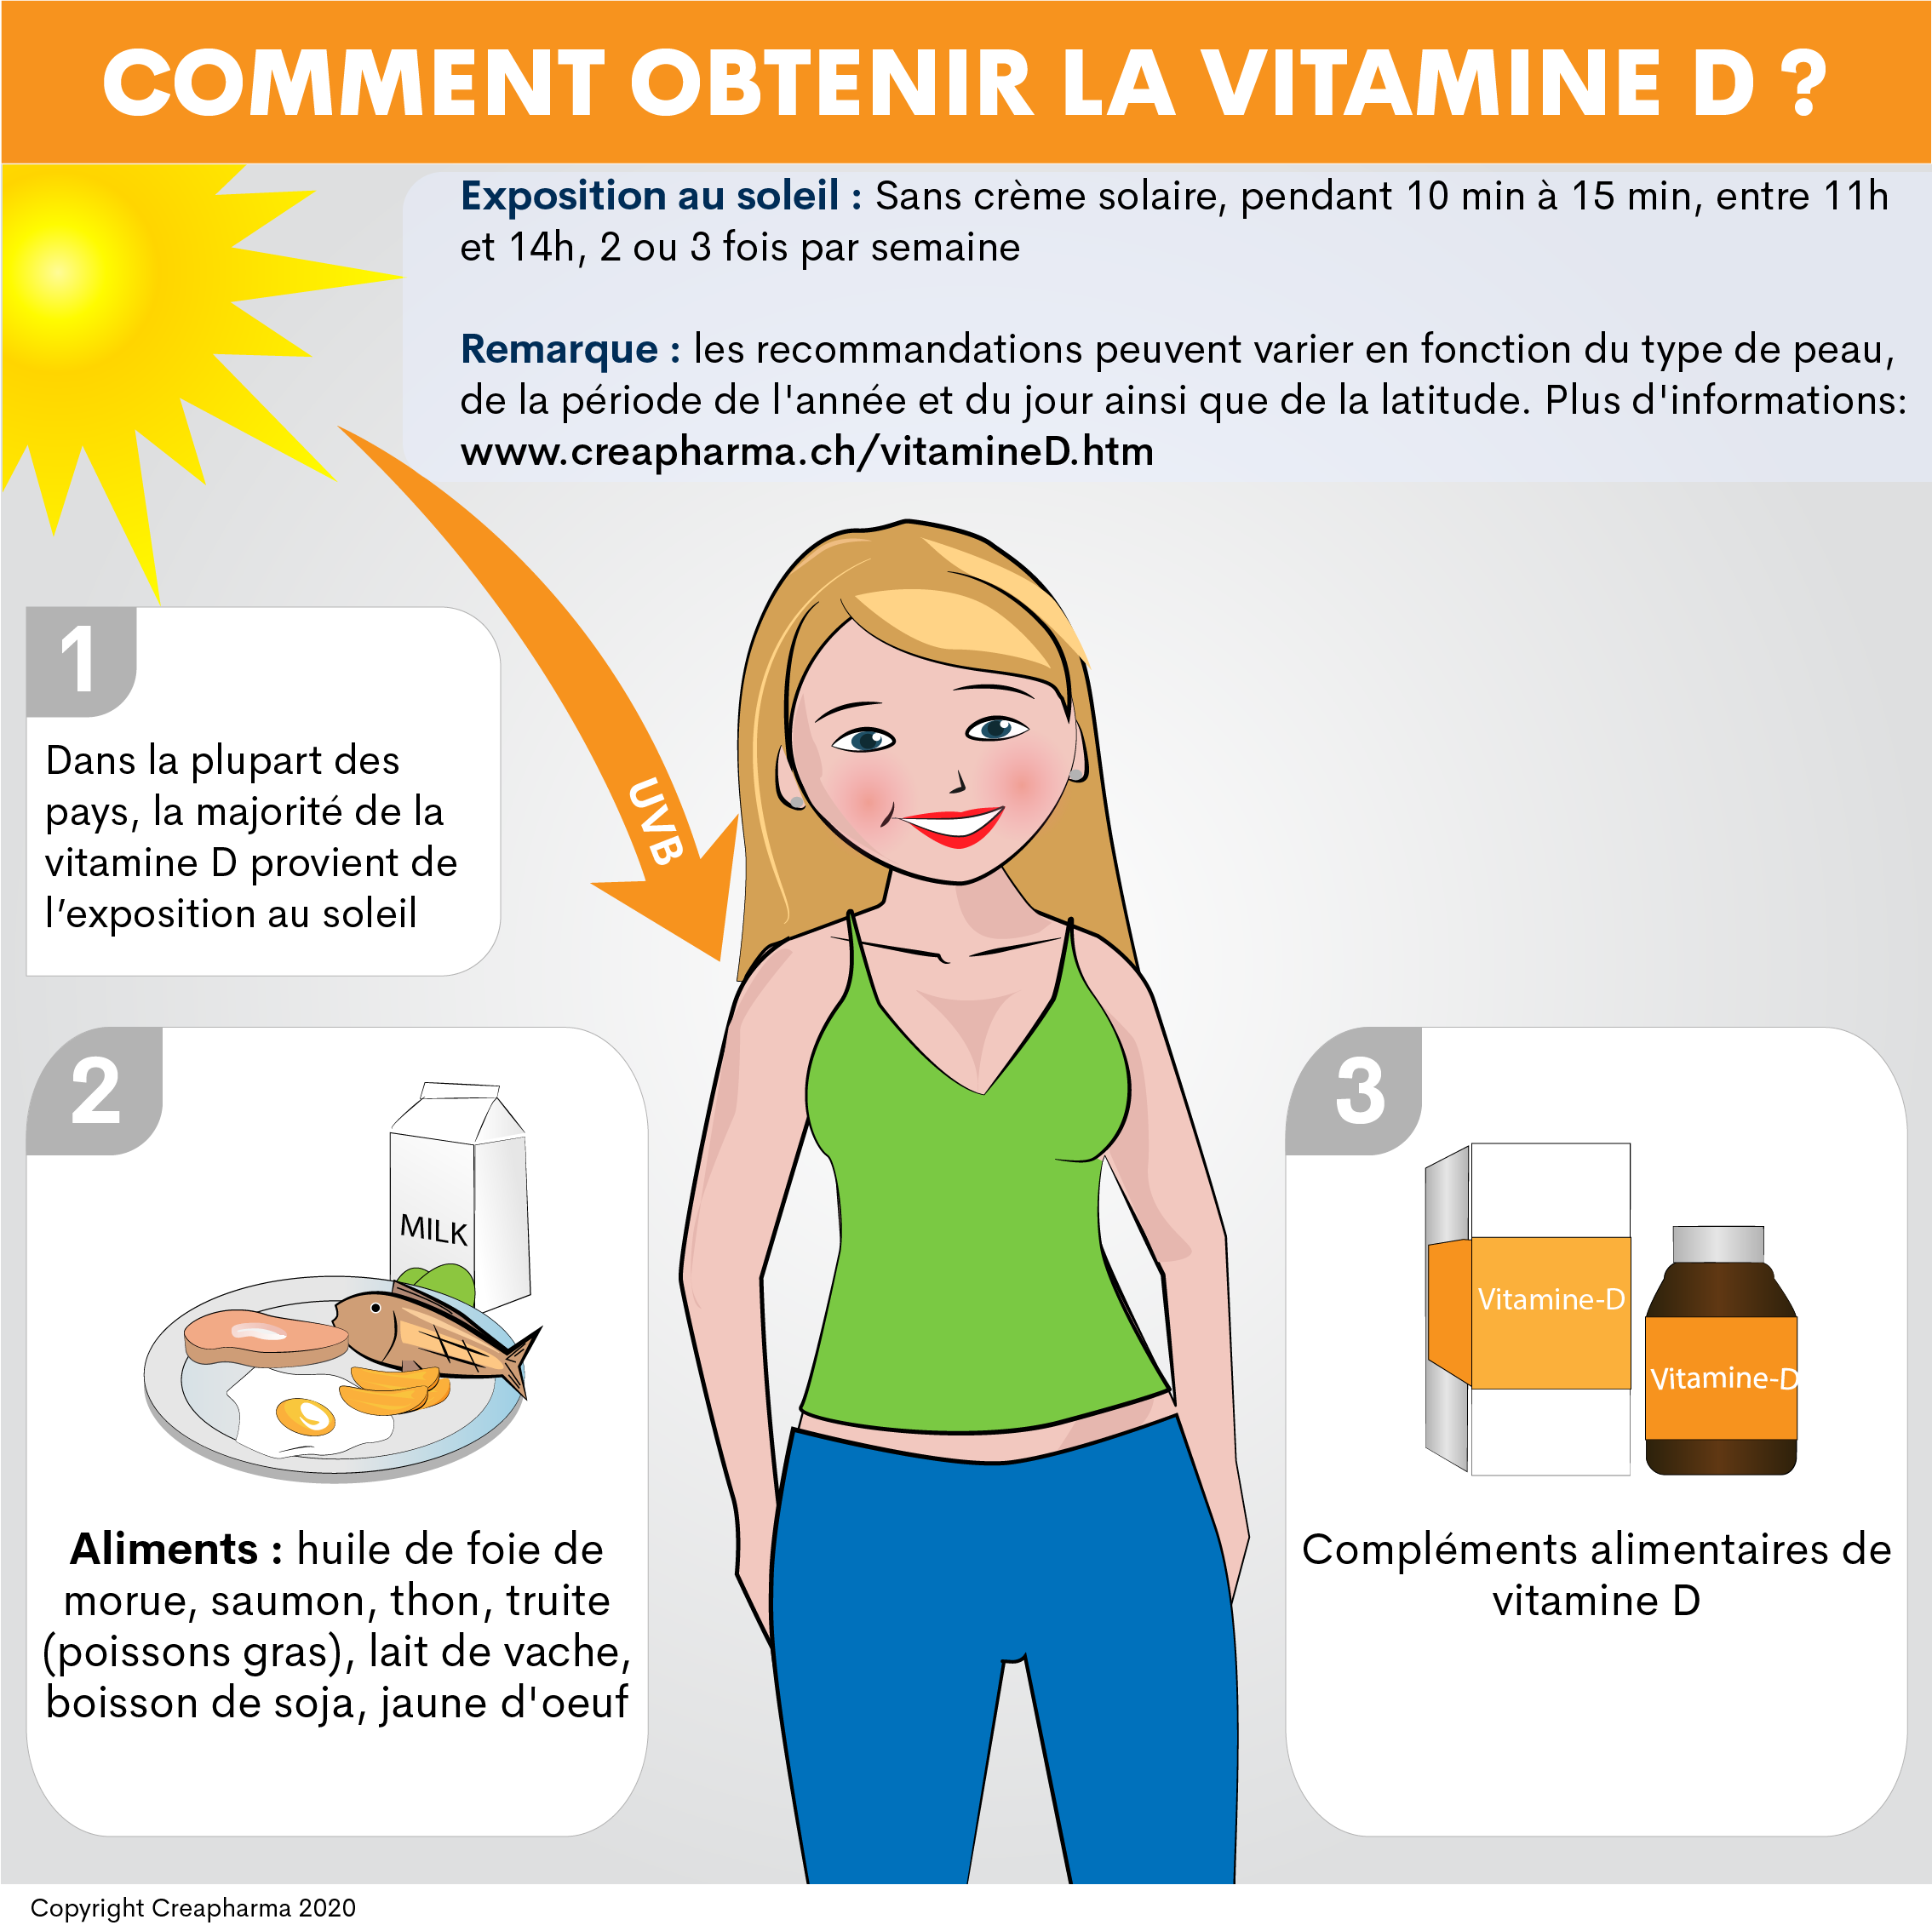 Carence en vitamine D : l'enrichissement alimentaire peut-il y remédier?